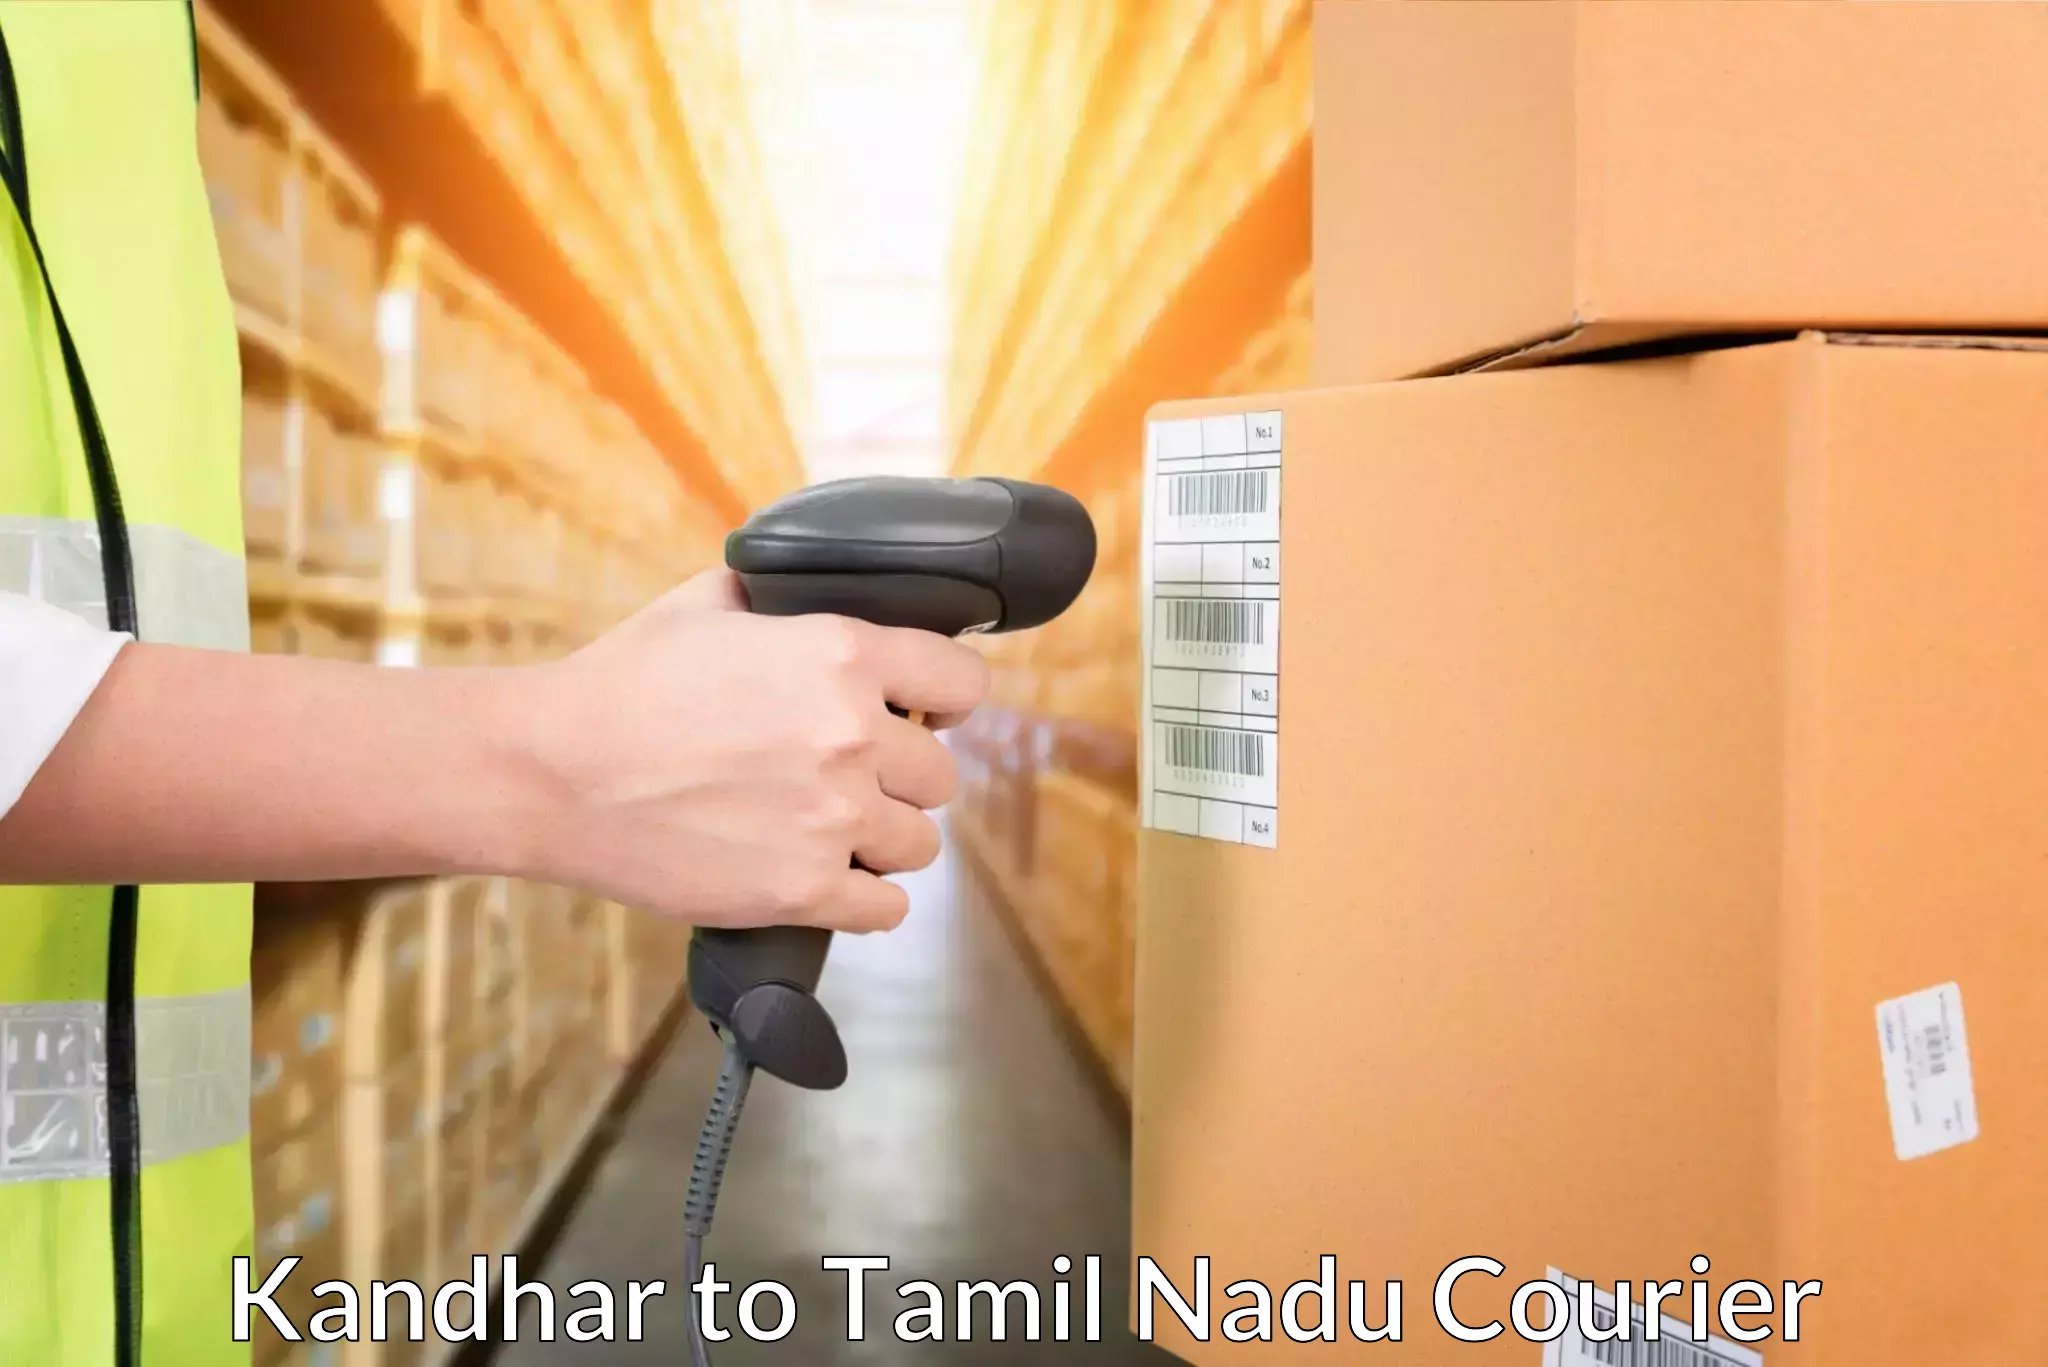 Professional courier handling Kandhar to Karaikudi